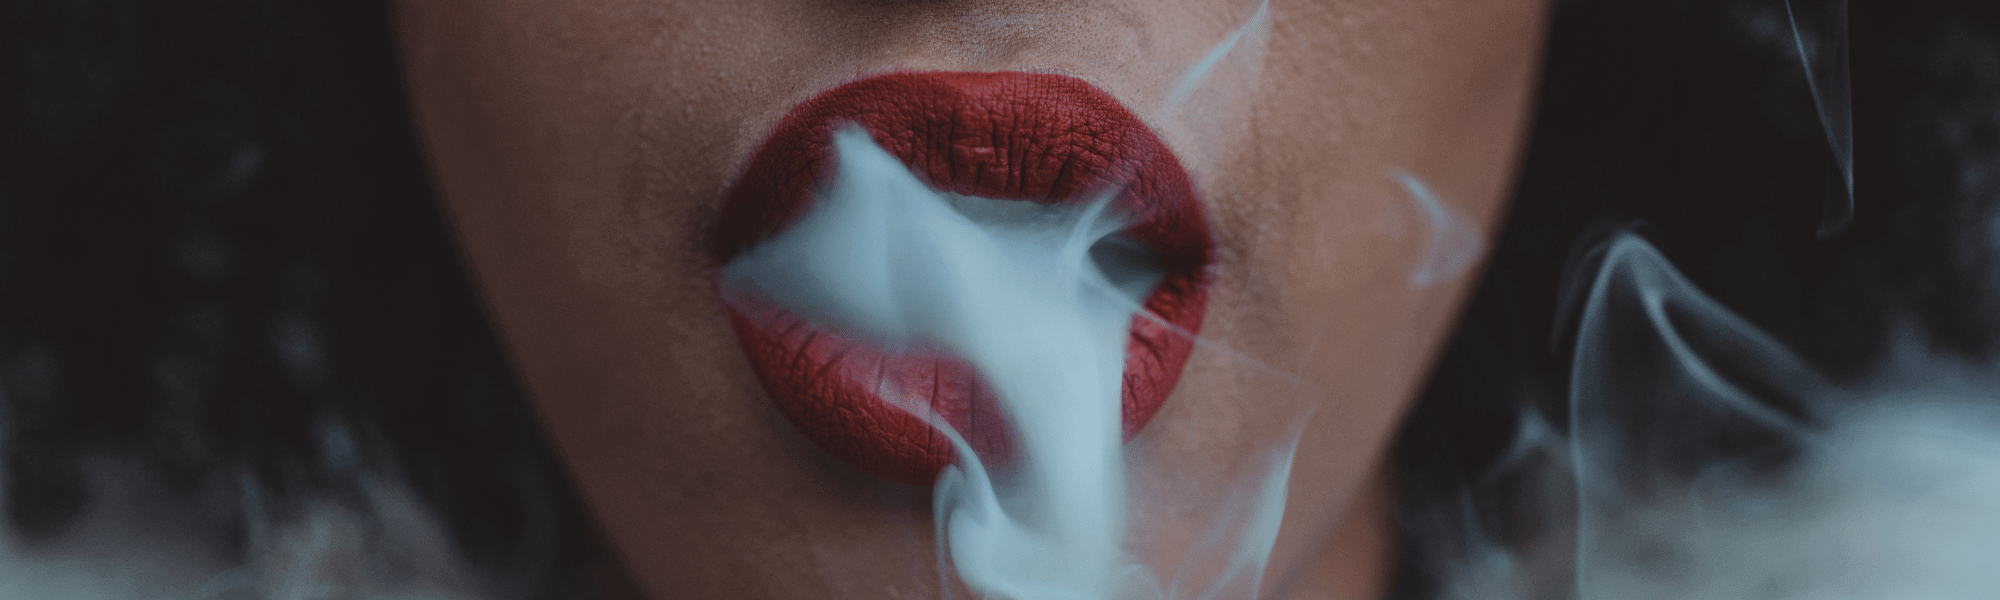 Mund mit rotem Lippenstift der rauch ausatmet